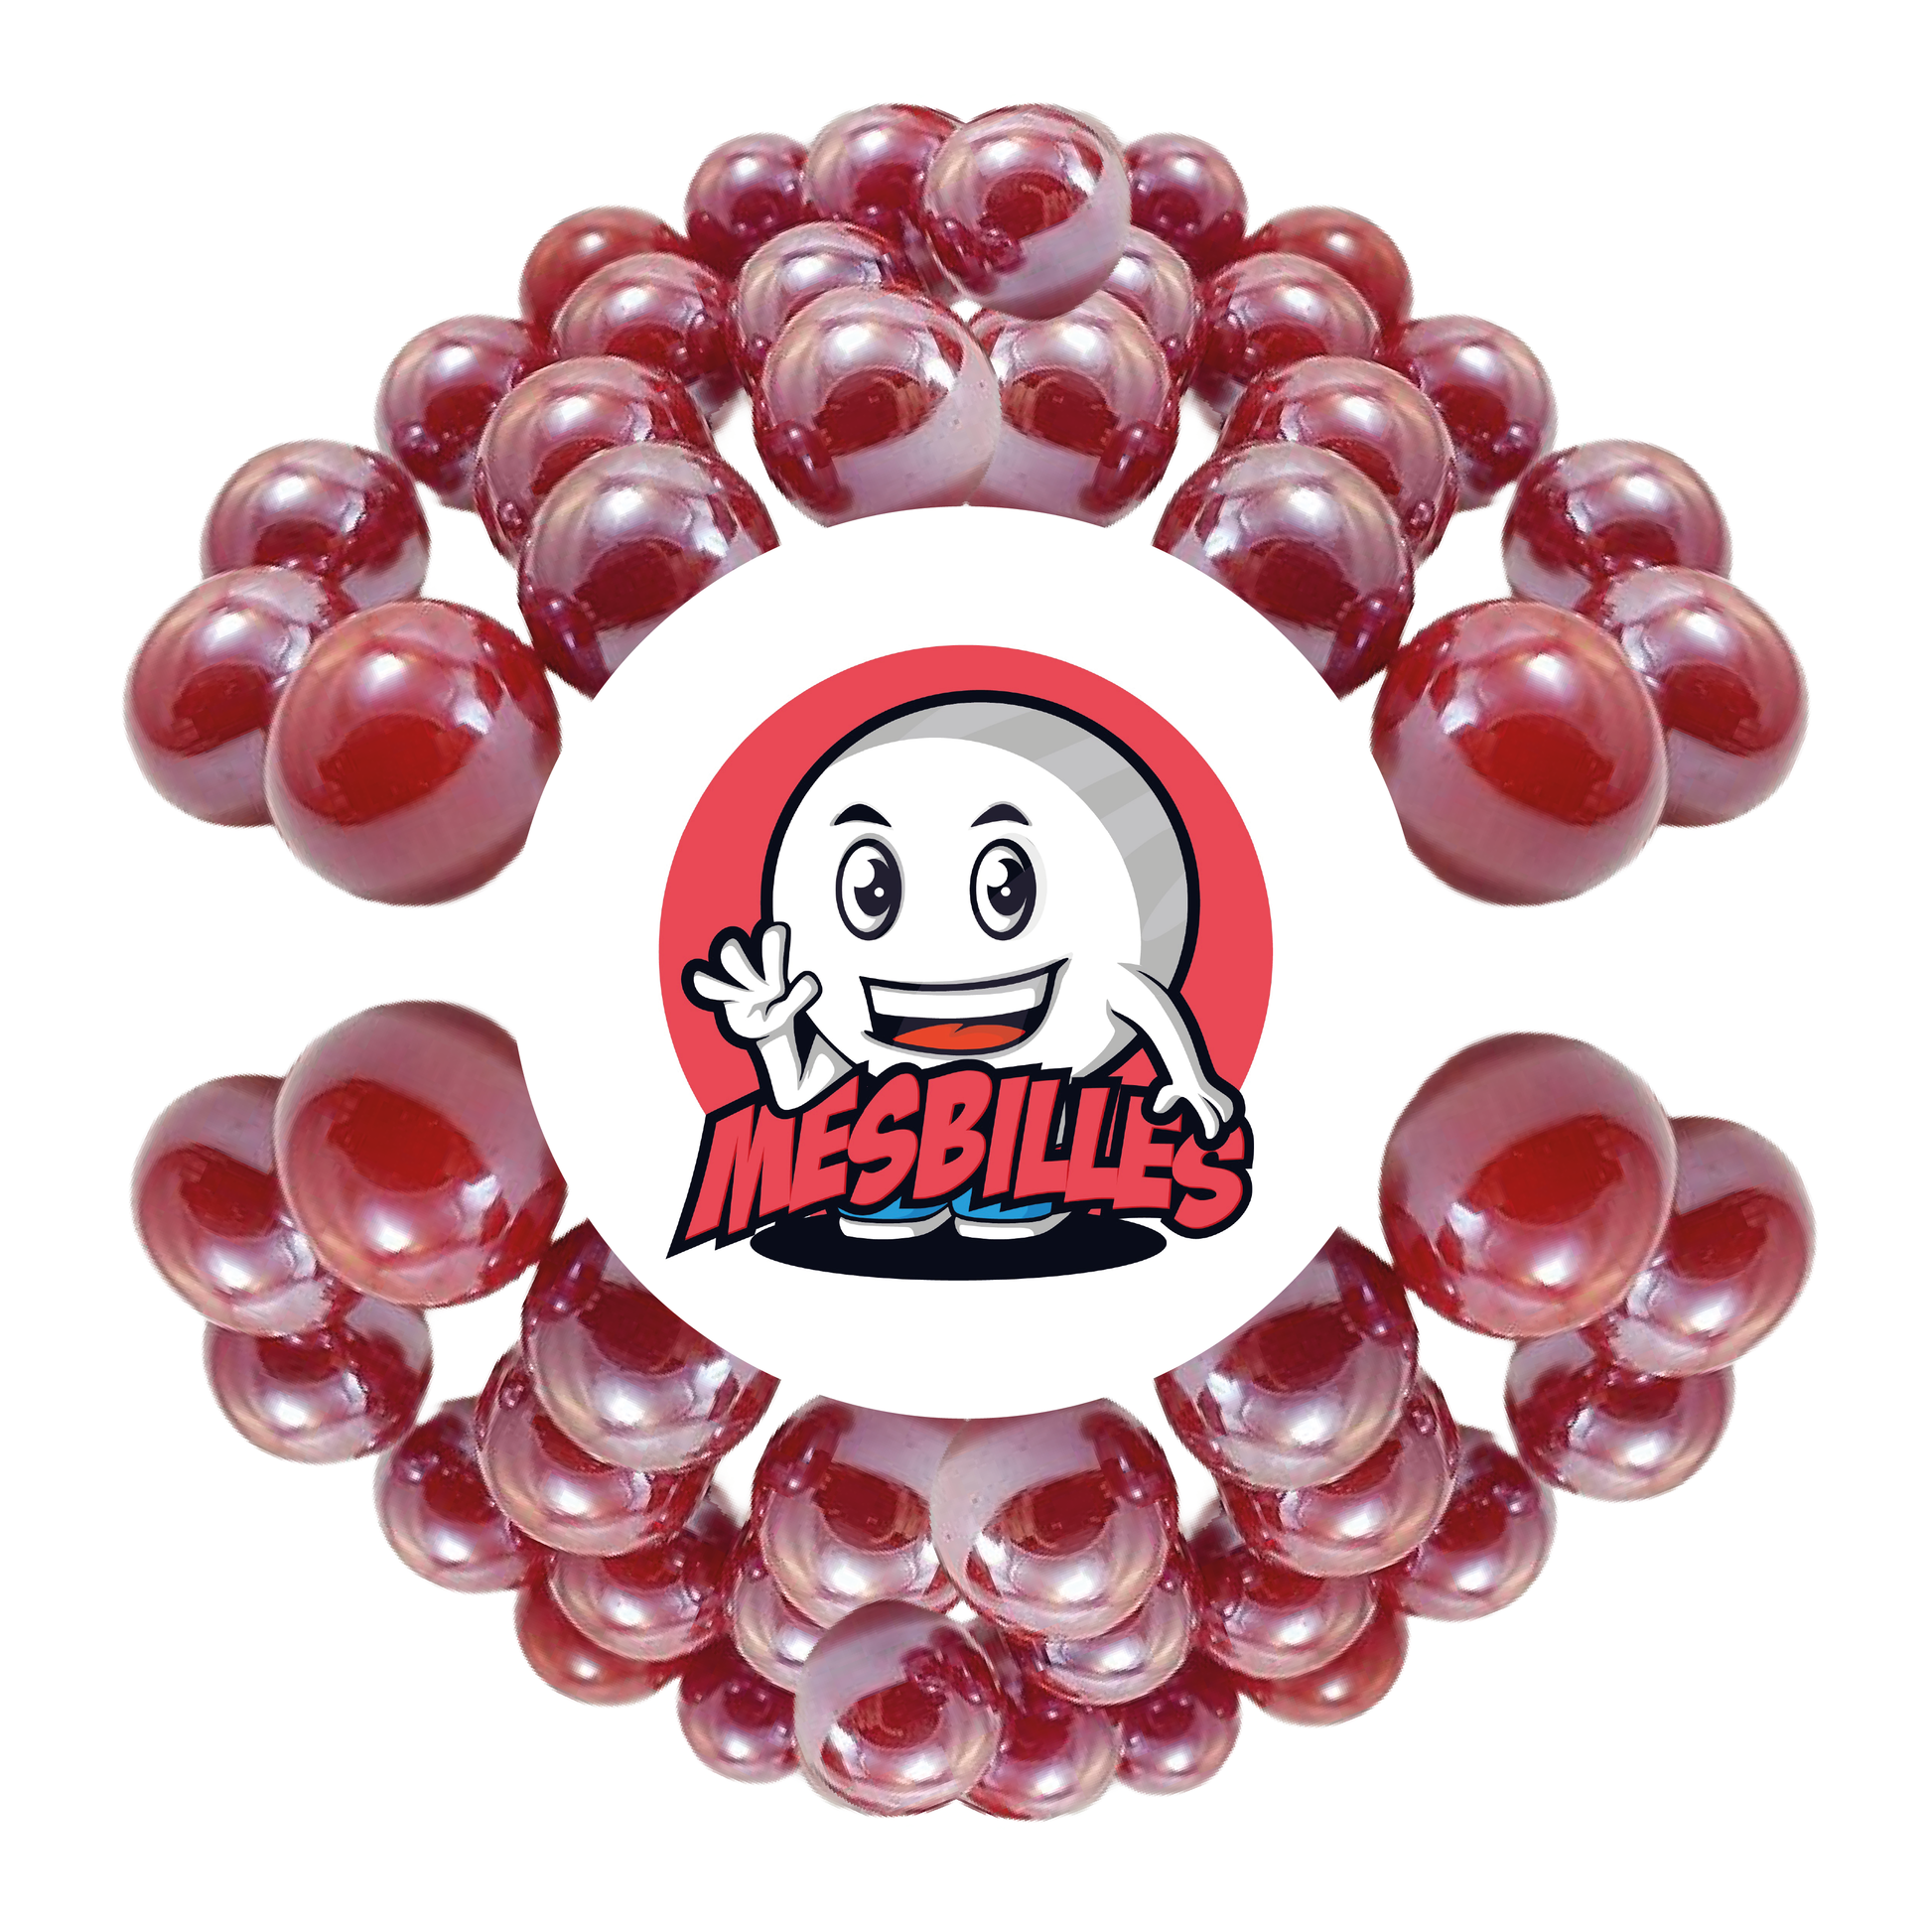 Image de la Mascotte MesBilles entourée de Billes Glossy 16 mm - Verre Opaque et Brillant Rouge